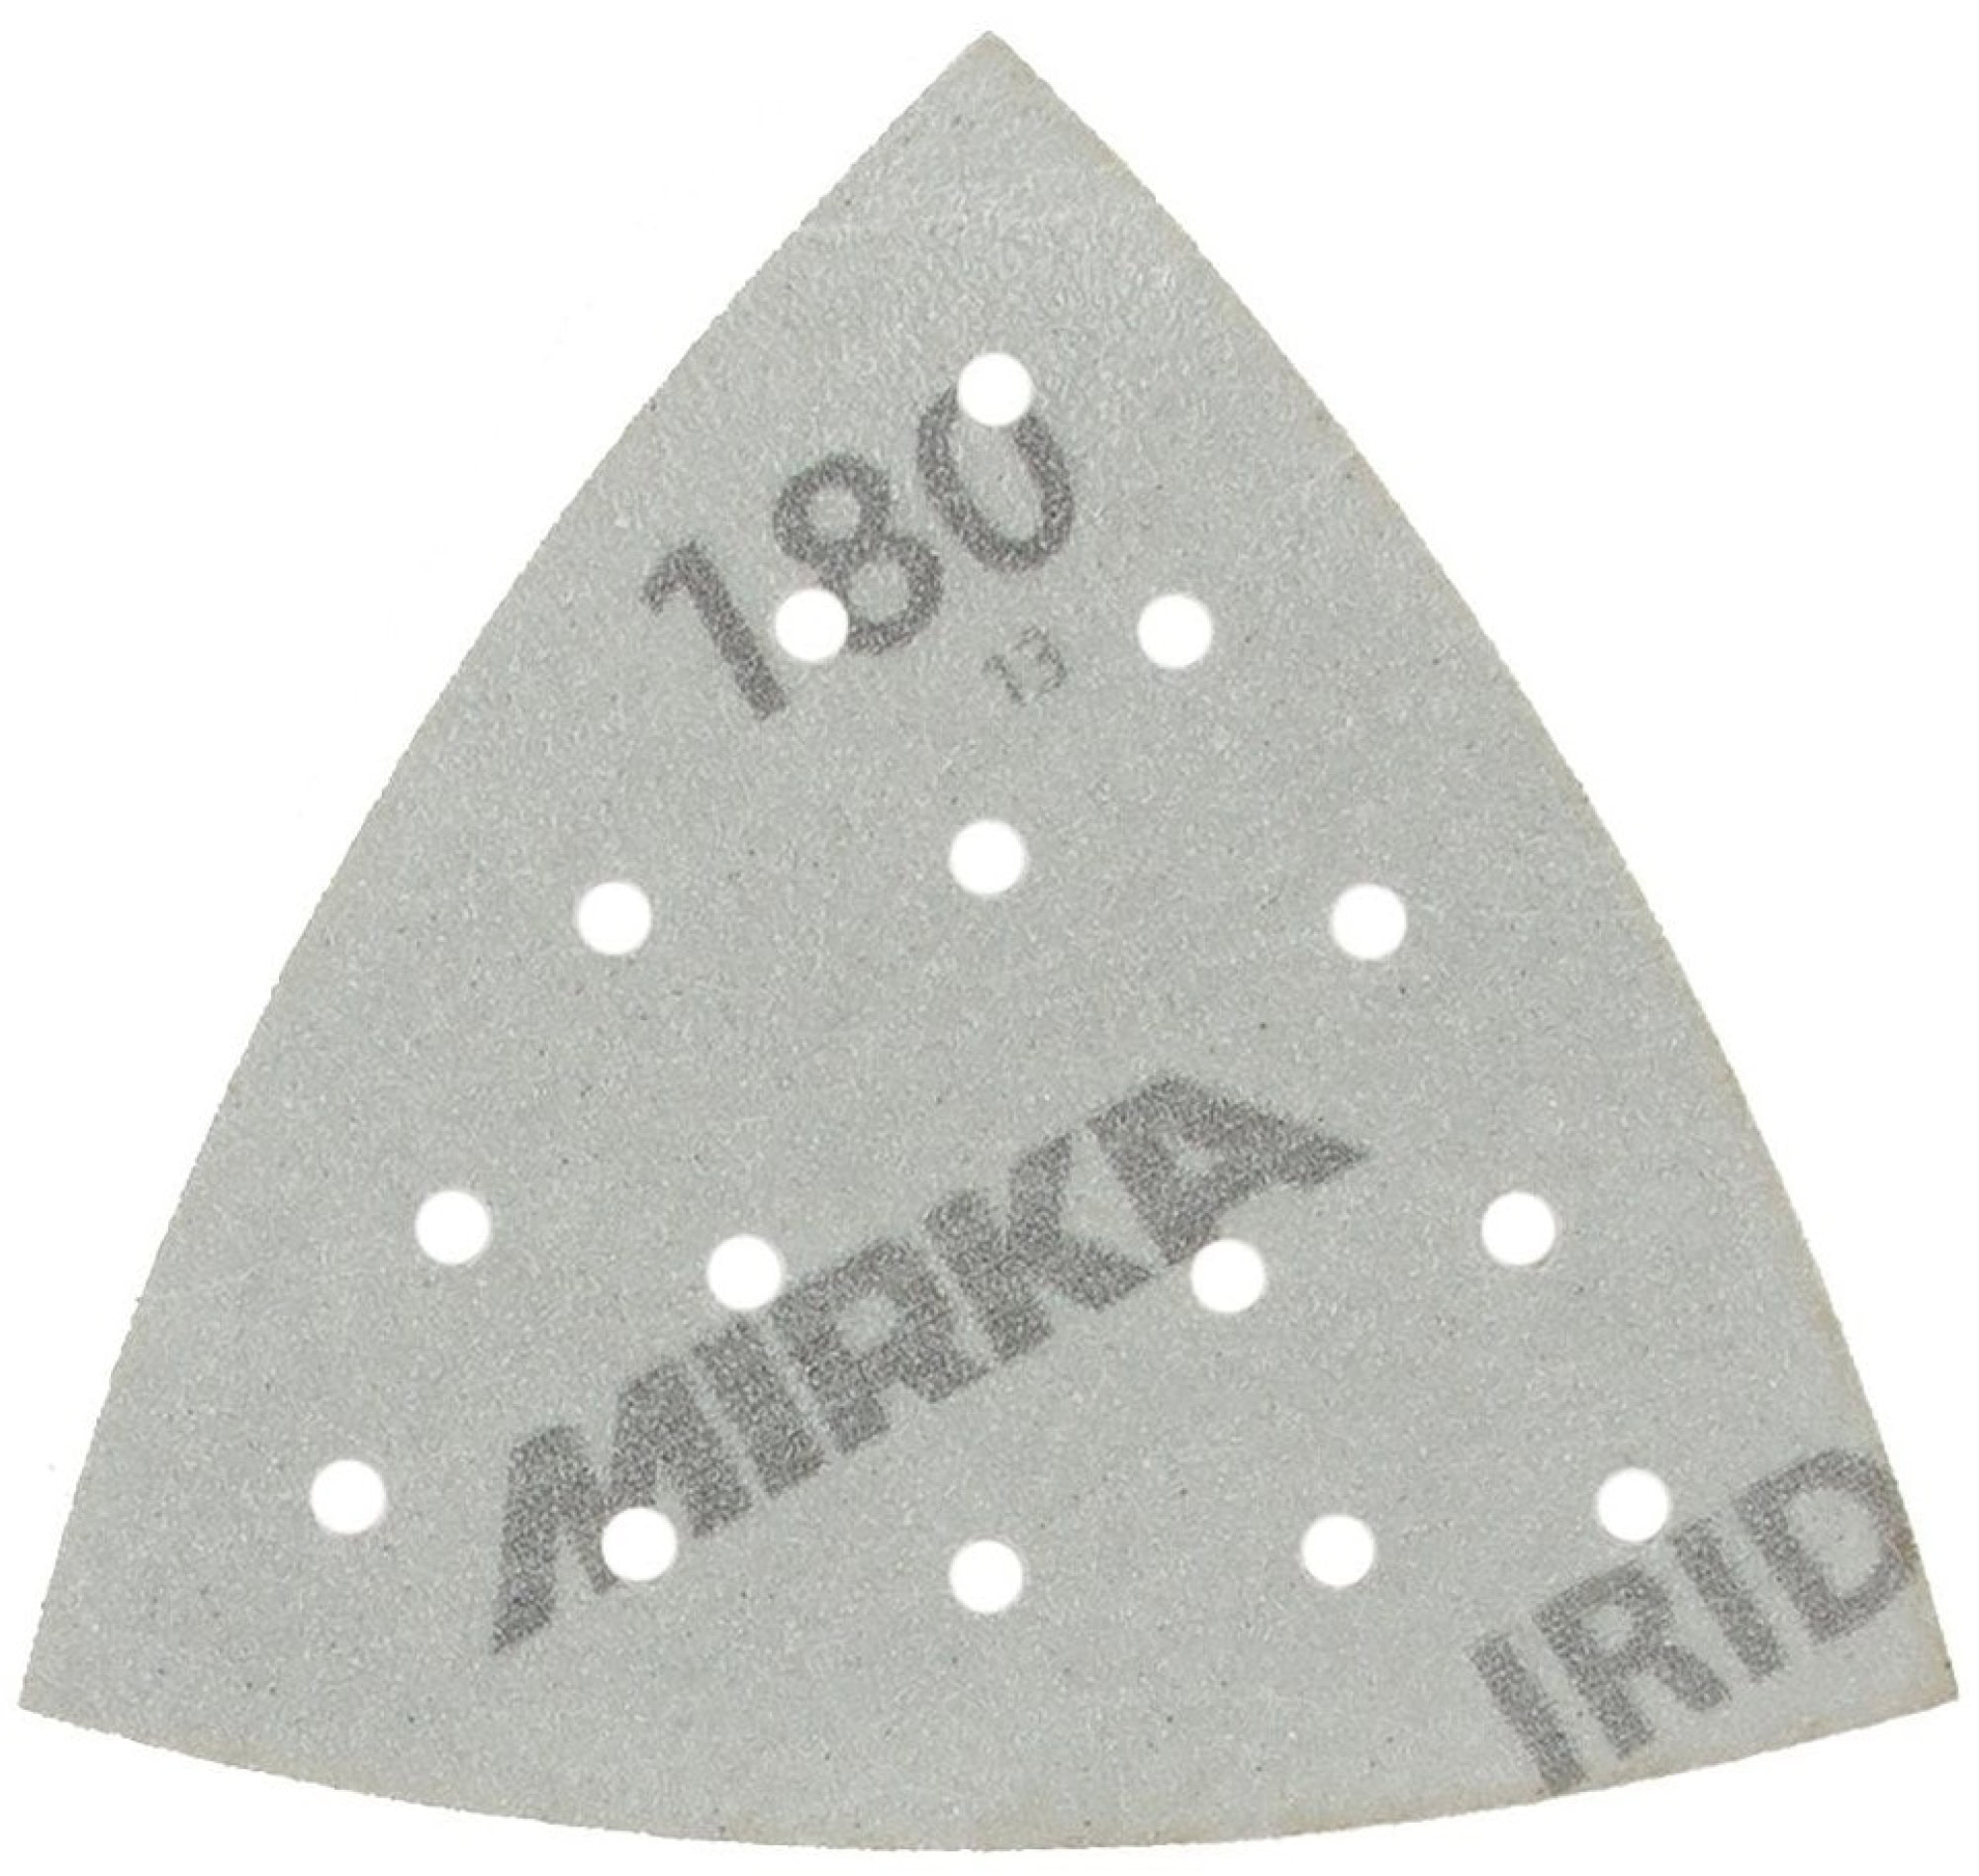 Mirka® Iridium® 246BQ05010, Ø 90 mm x 93 mm x 93 mm, P100, Multilochung, Kletthaftend, Delta Schleifscheibe mit Keramik- und Aluminiumkorn